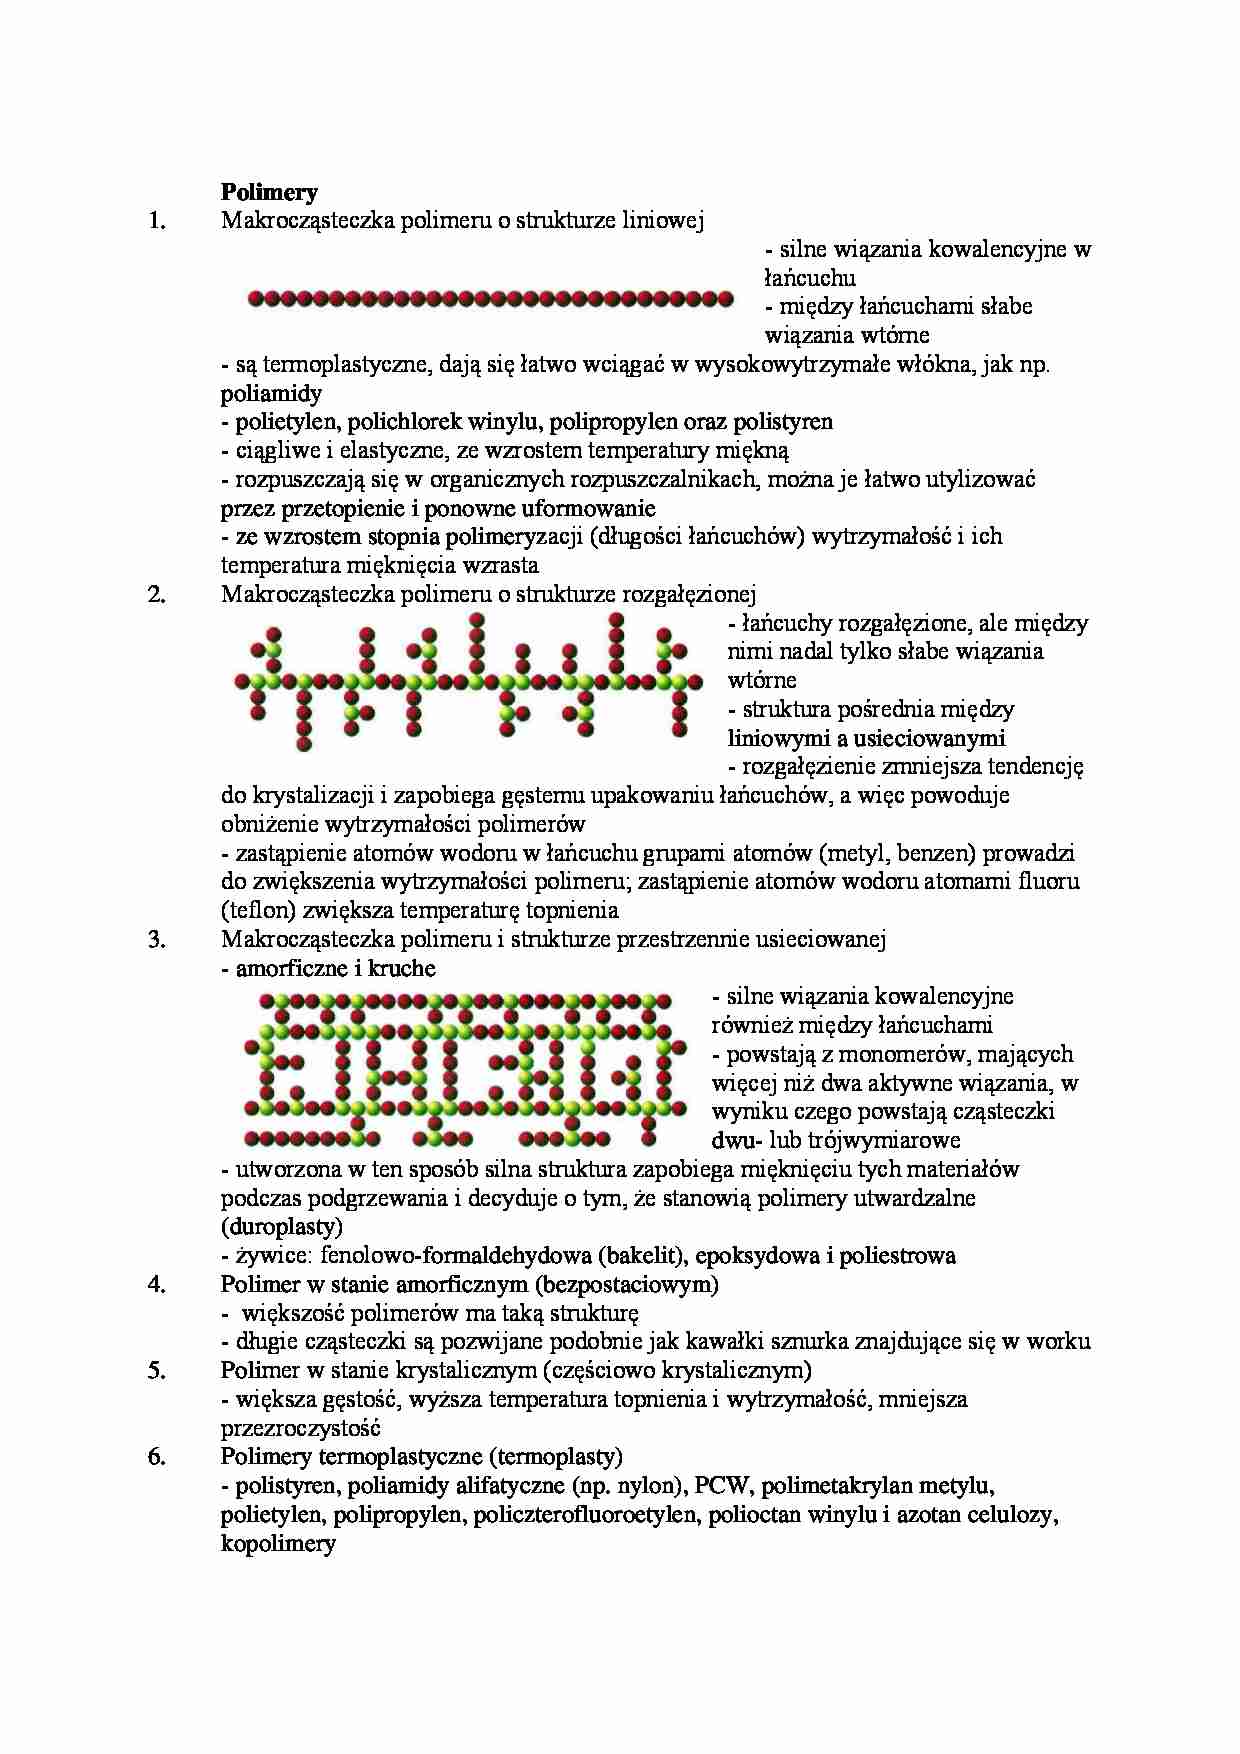 Polimery-opracowanie - Duroplasty  - strona 1